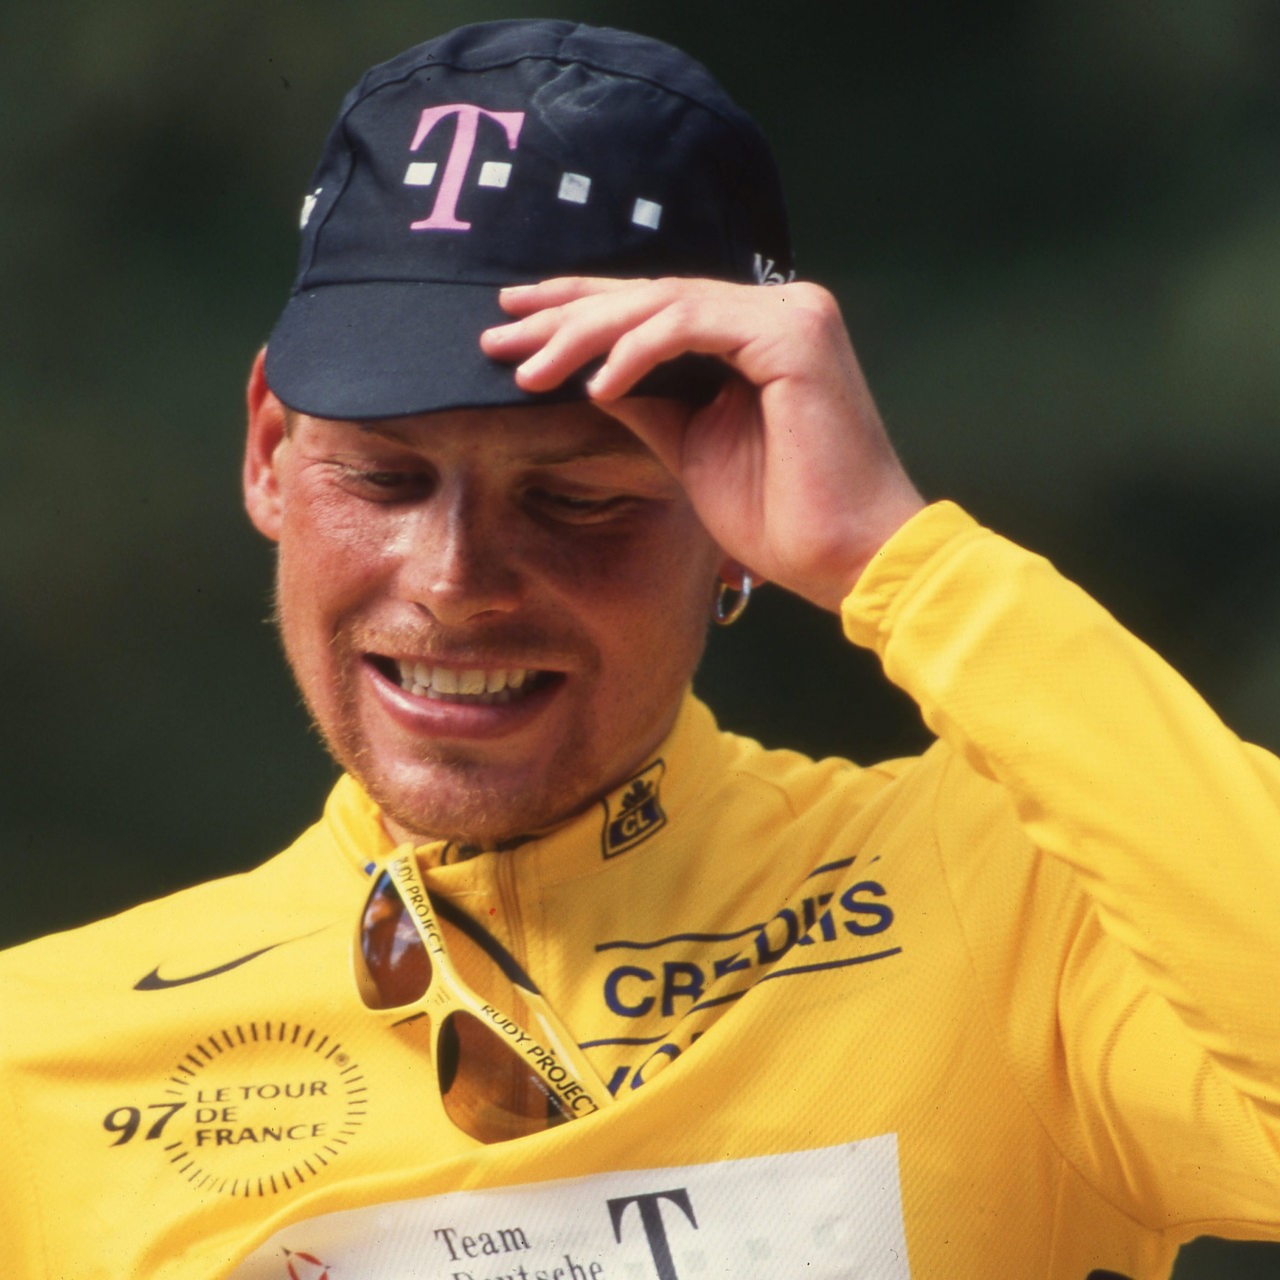 Der Radrennfahrer Jan Ullrich während der Siegerehrung 1997 im Gelben Trikot der Tour de France